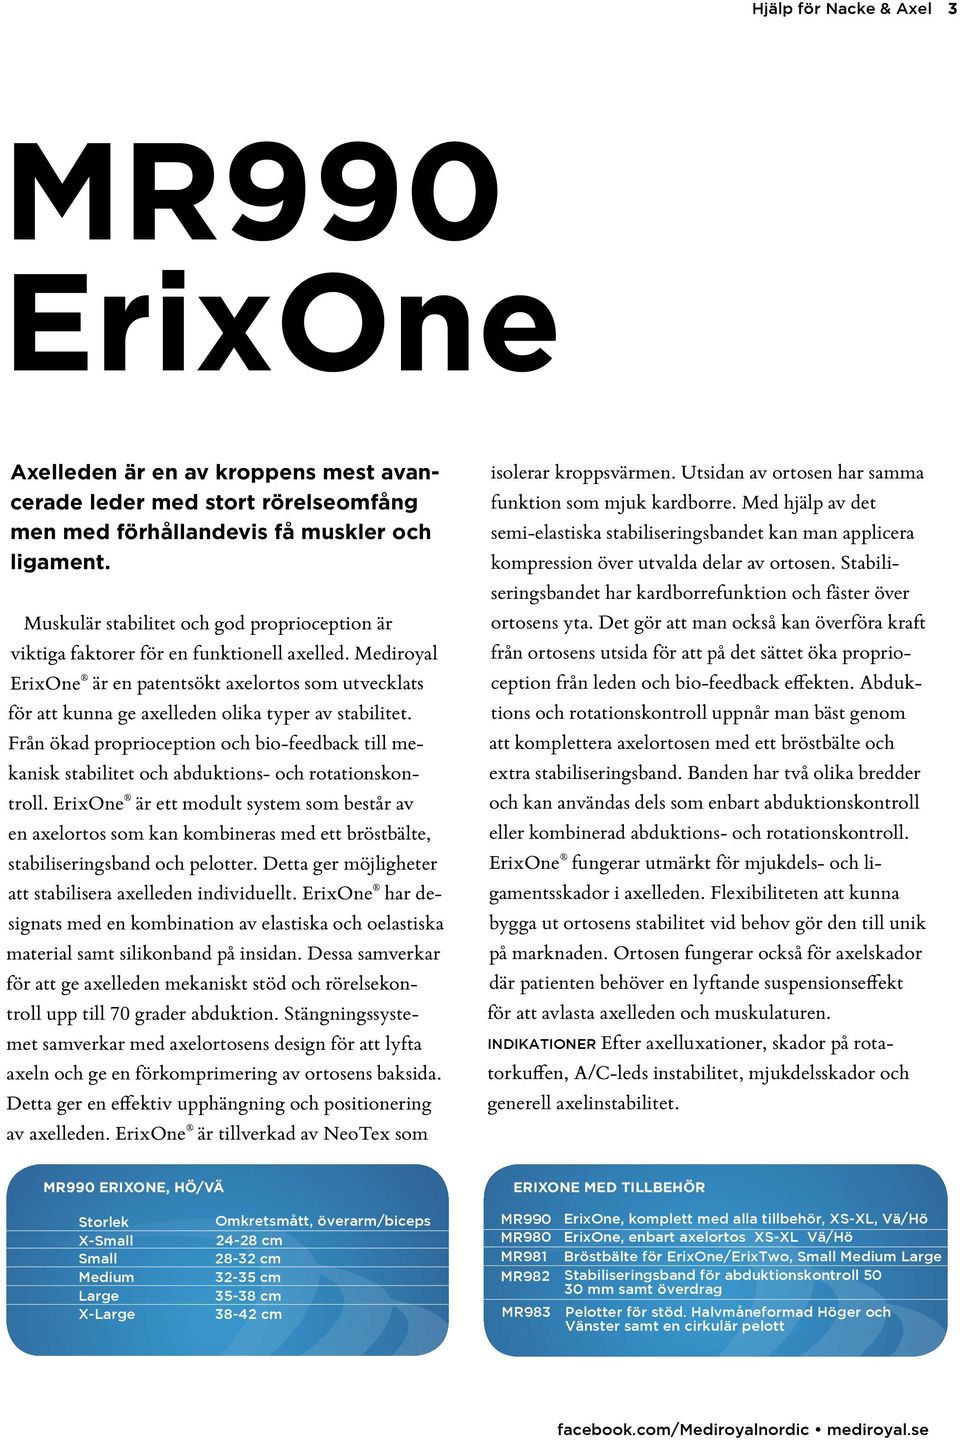 Mediroyal ErixOne är en patentsökt axelortos som utvecklats för att kunna ge axelleden olika typer av stabilitet.